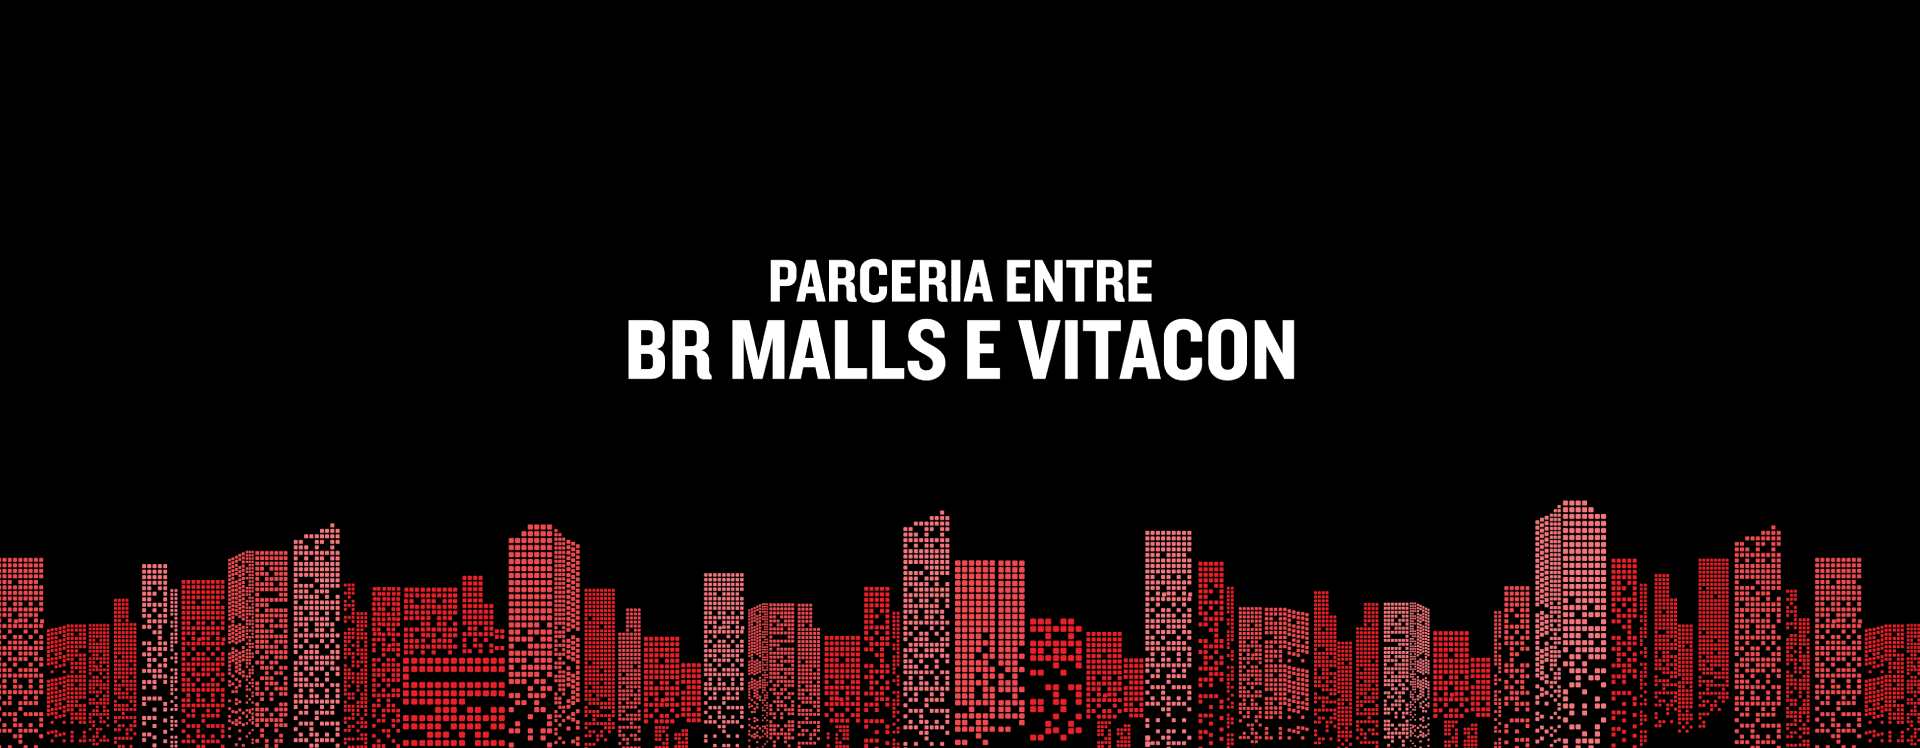 Comunicado ao mercado: parceria entre brMalls e Vitacon